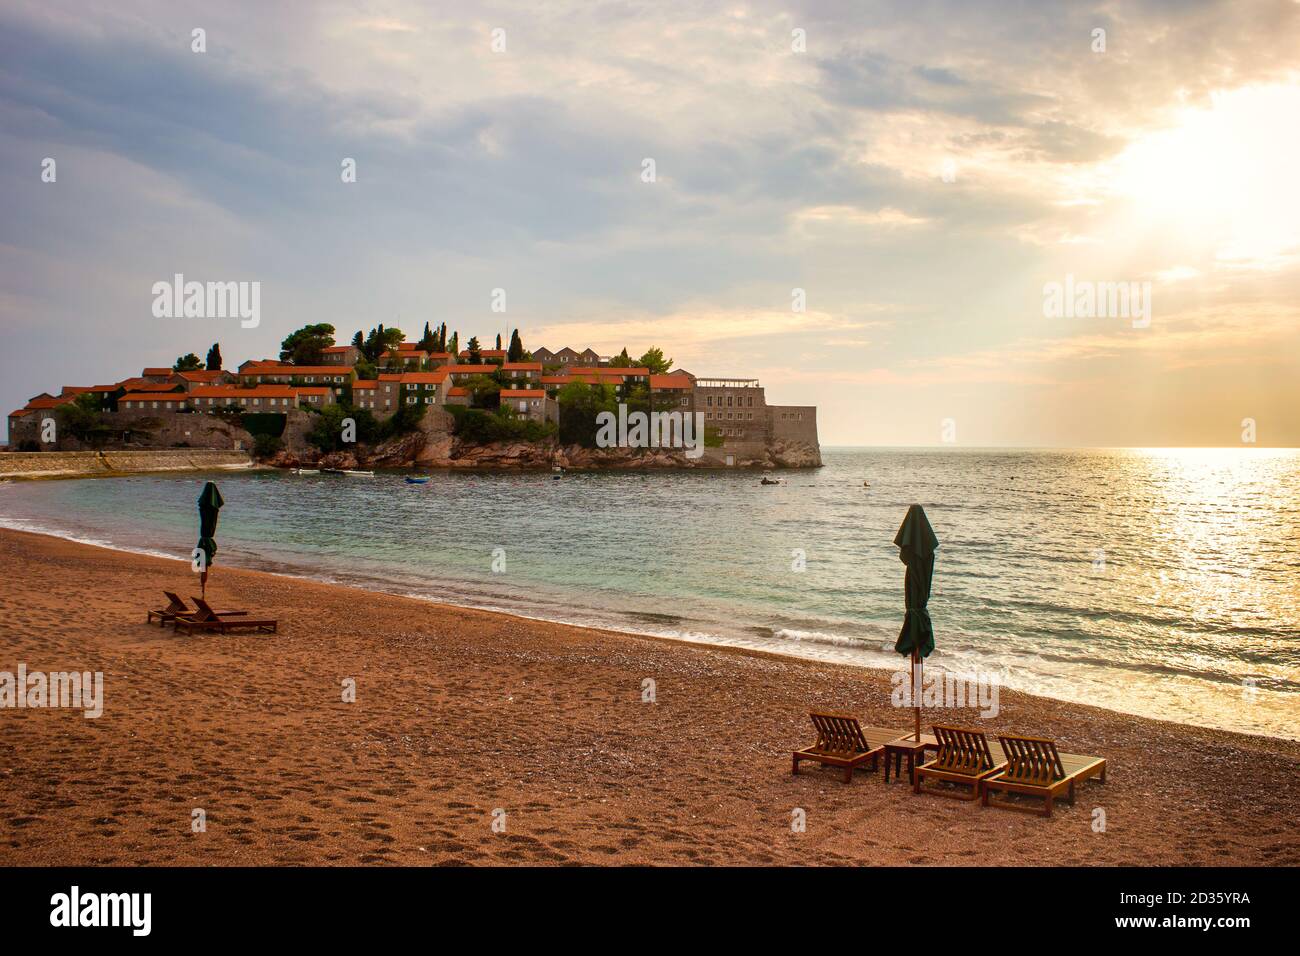 Sveti Stefan storico isola cittadina e paradiso spiaggia di sabbia al tramonto. Budva riviera, Montenegro (mare Adriatico), Europa. Concetto di viaggio, sfondo. Foto Stock